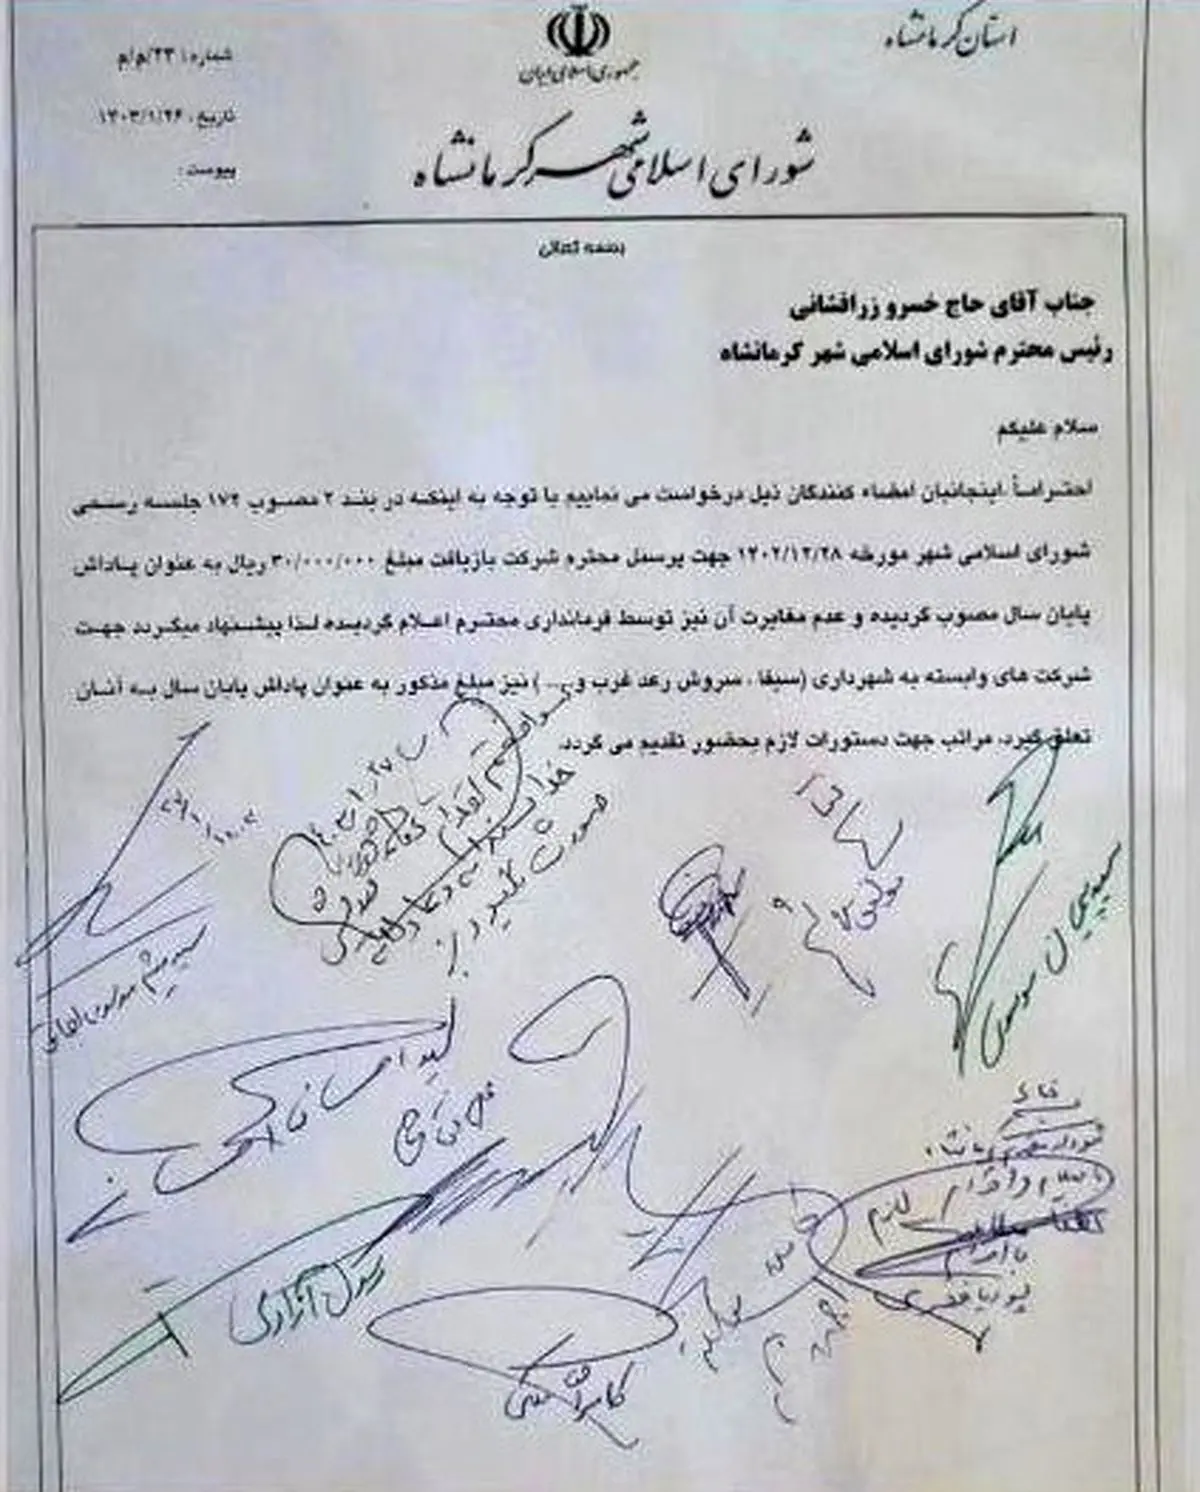 انتظارکارگران بازیافت شهرداری کرمانشاه برای دریافت پاداش و بن ماه مبارک رمضان